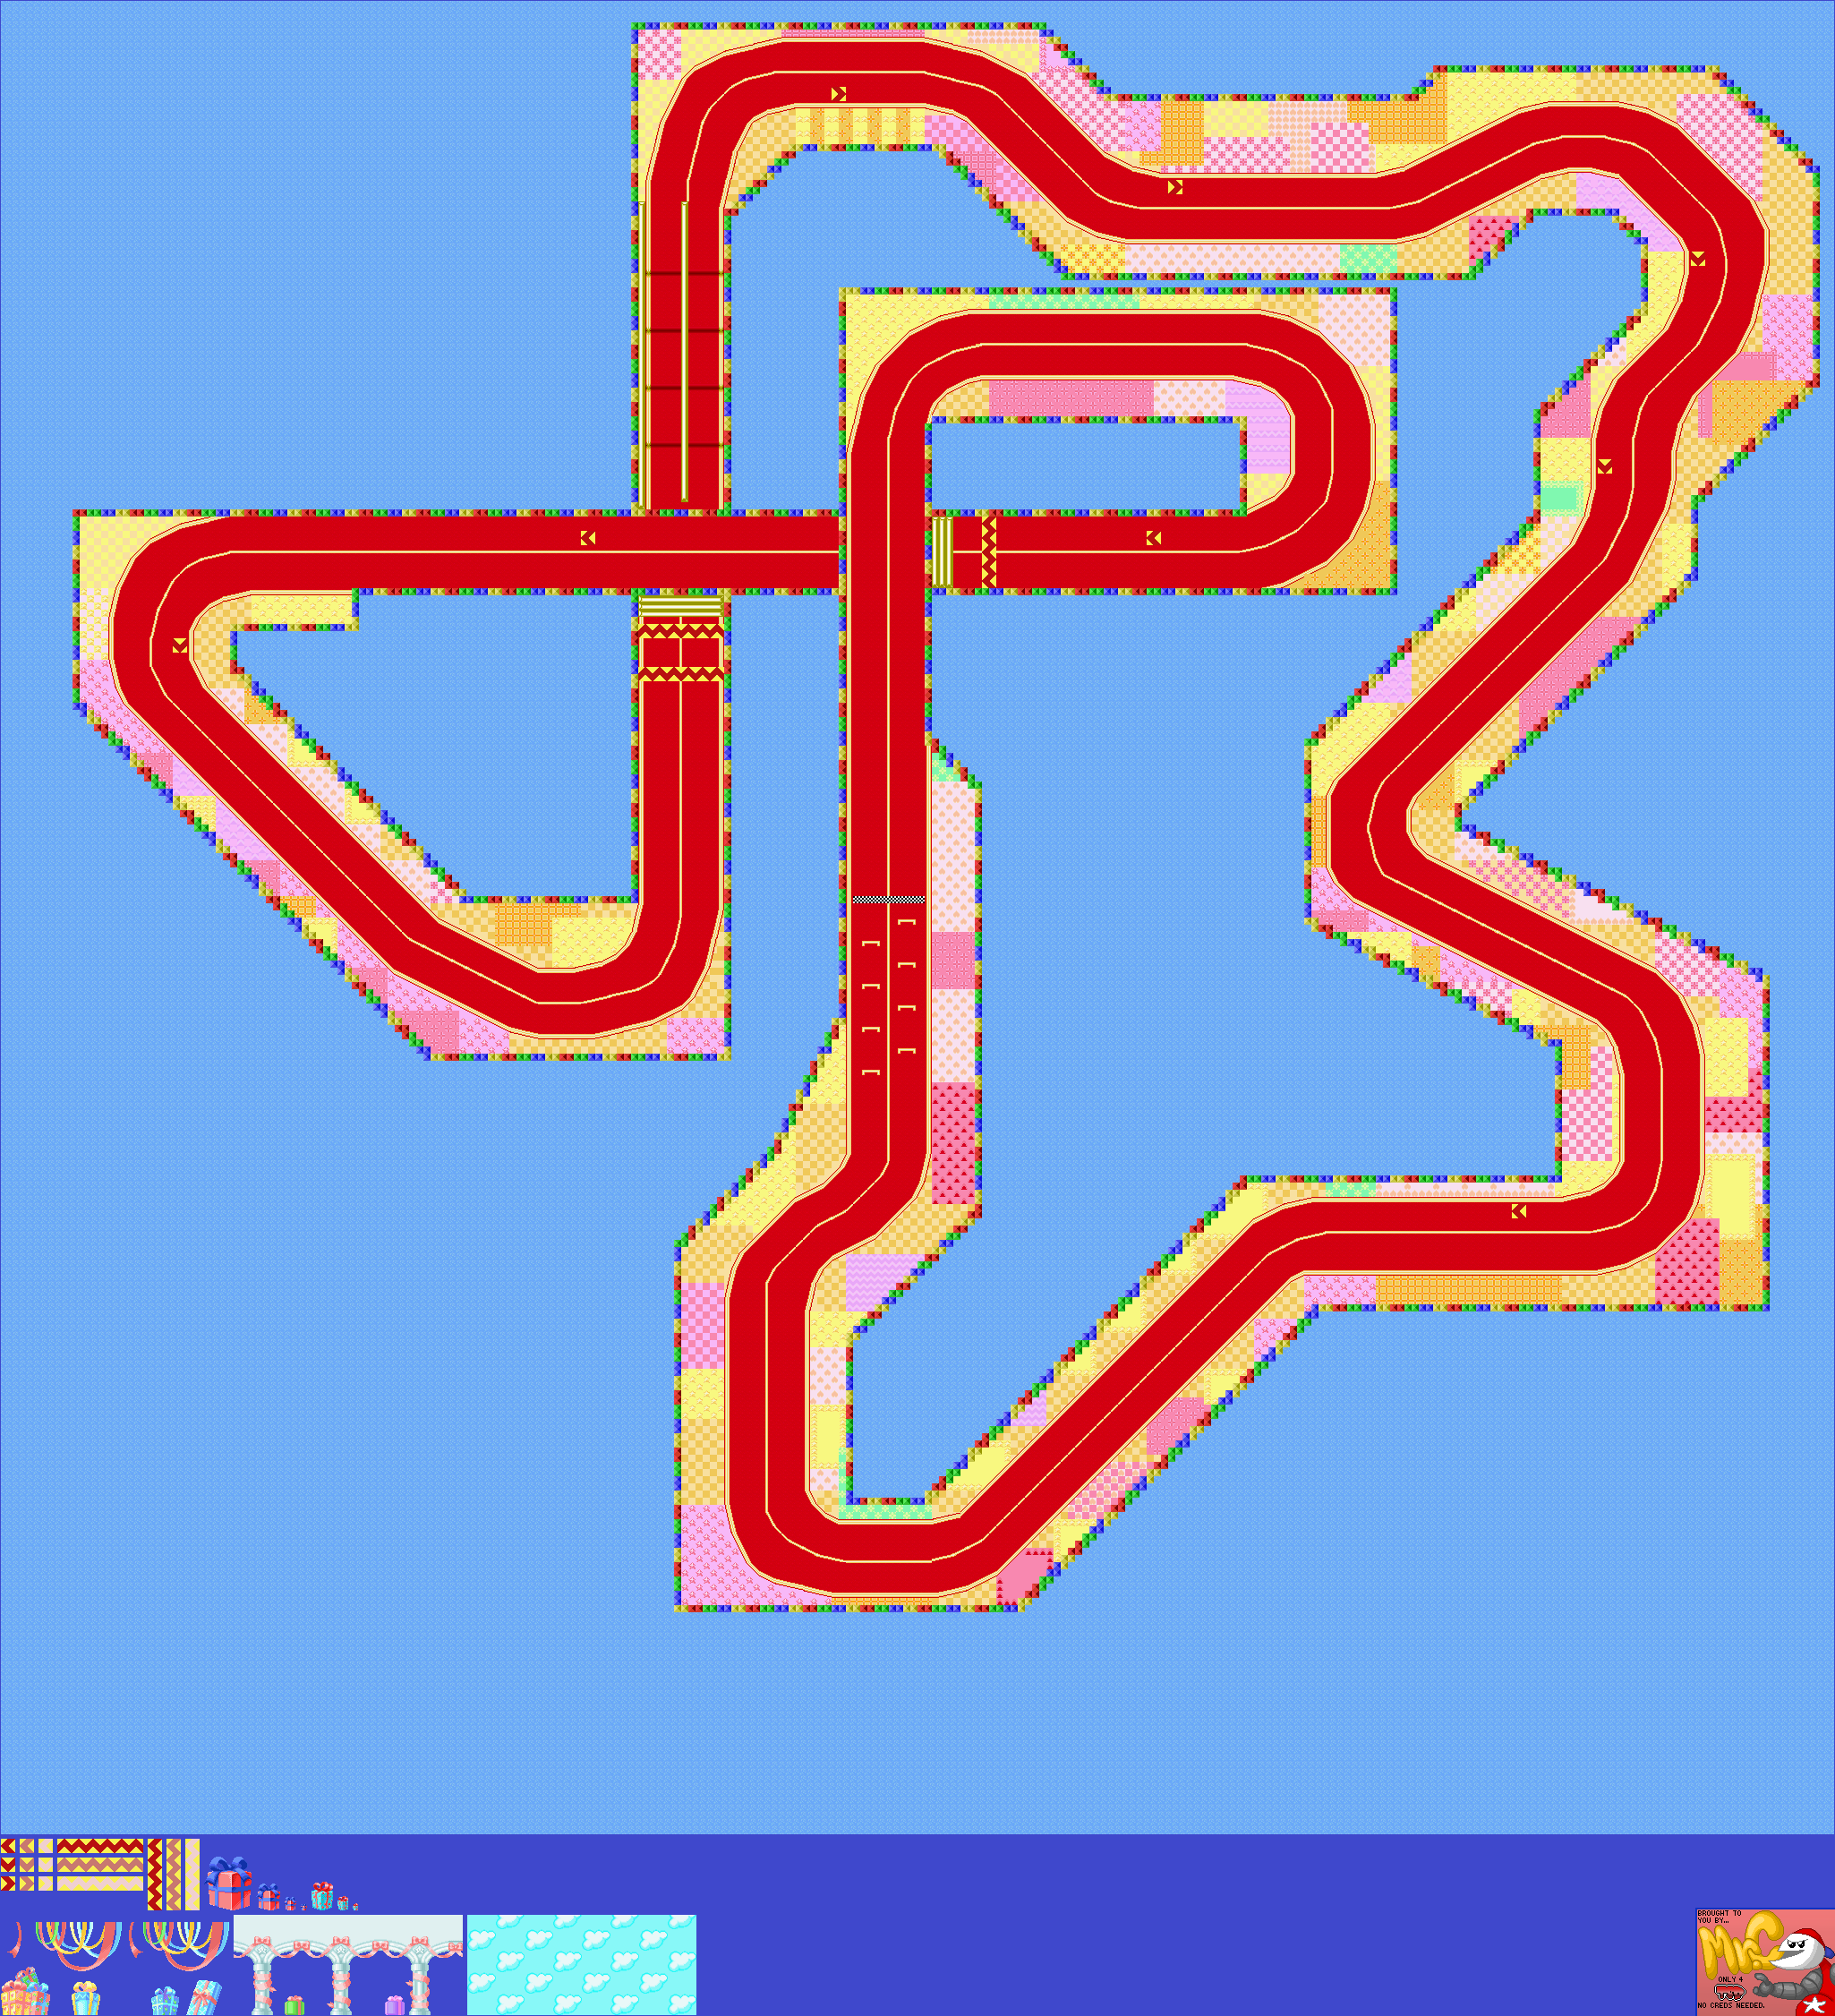 Mario Kart: Super Circuit - Ribbon Road